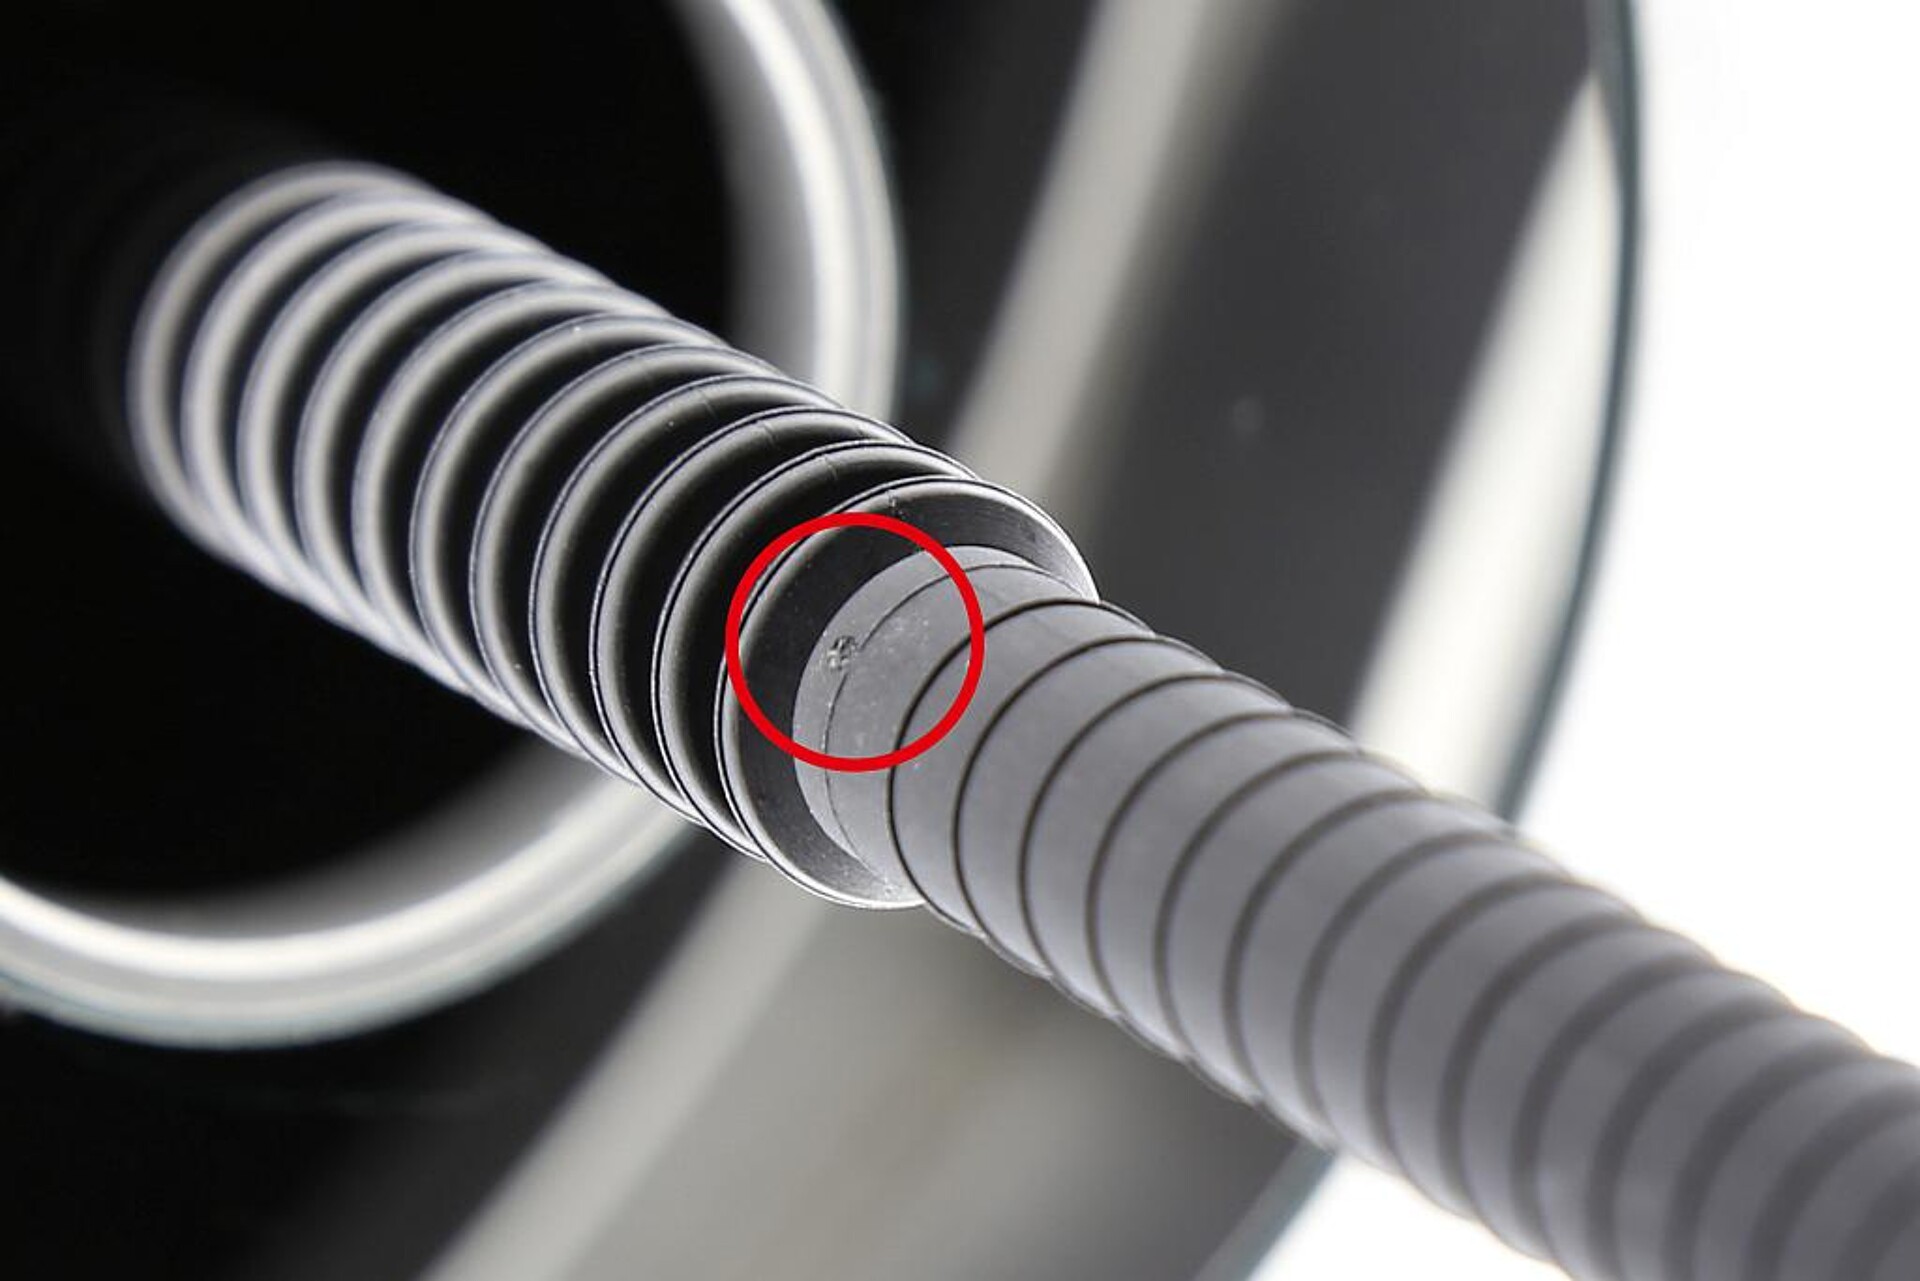 Kleinste Fehler wie beispielsweise eine Delle in einem Schutzrohr für die Fahrzeugelektronik können schnell zu sicherheitskritischen Mängeln werden. (Foto: Pixargus)